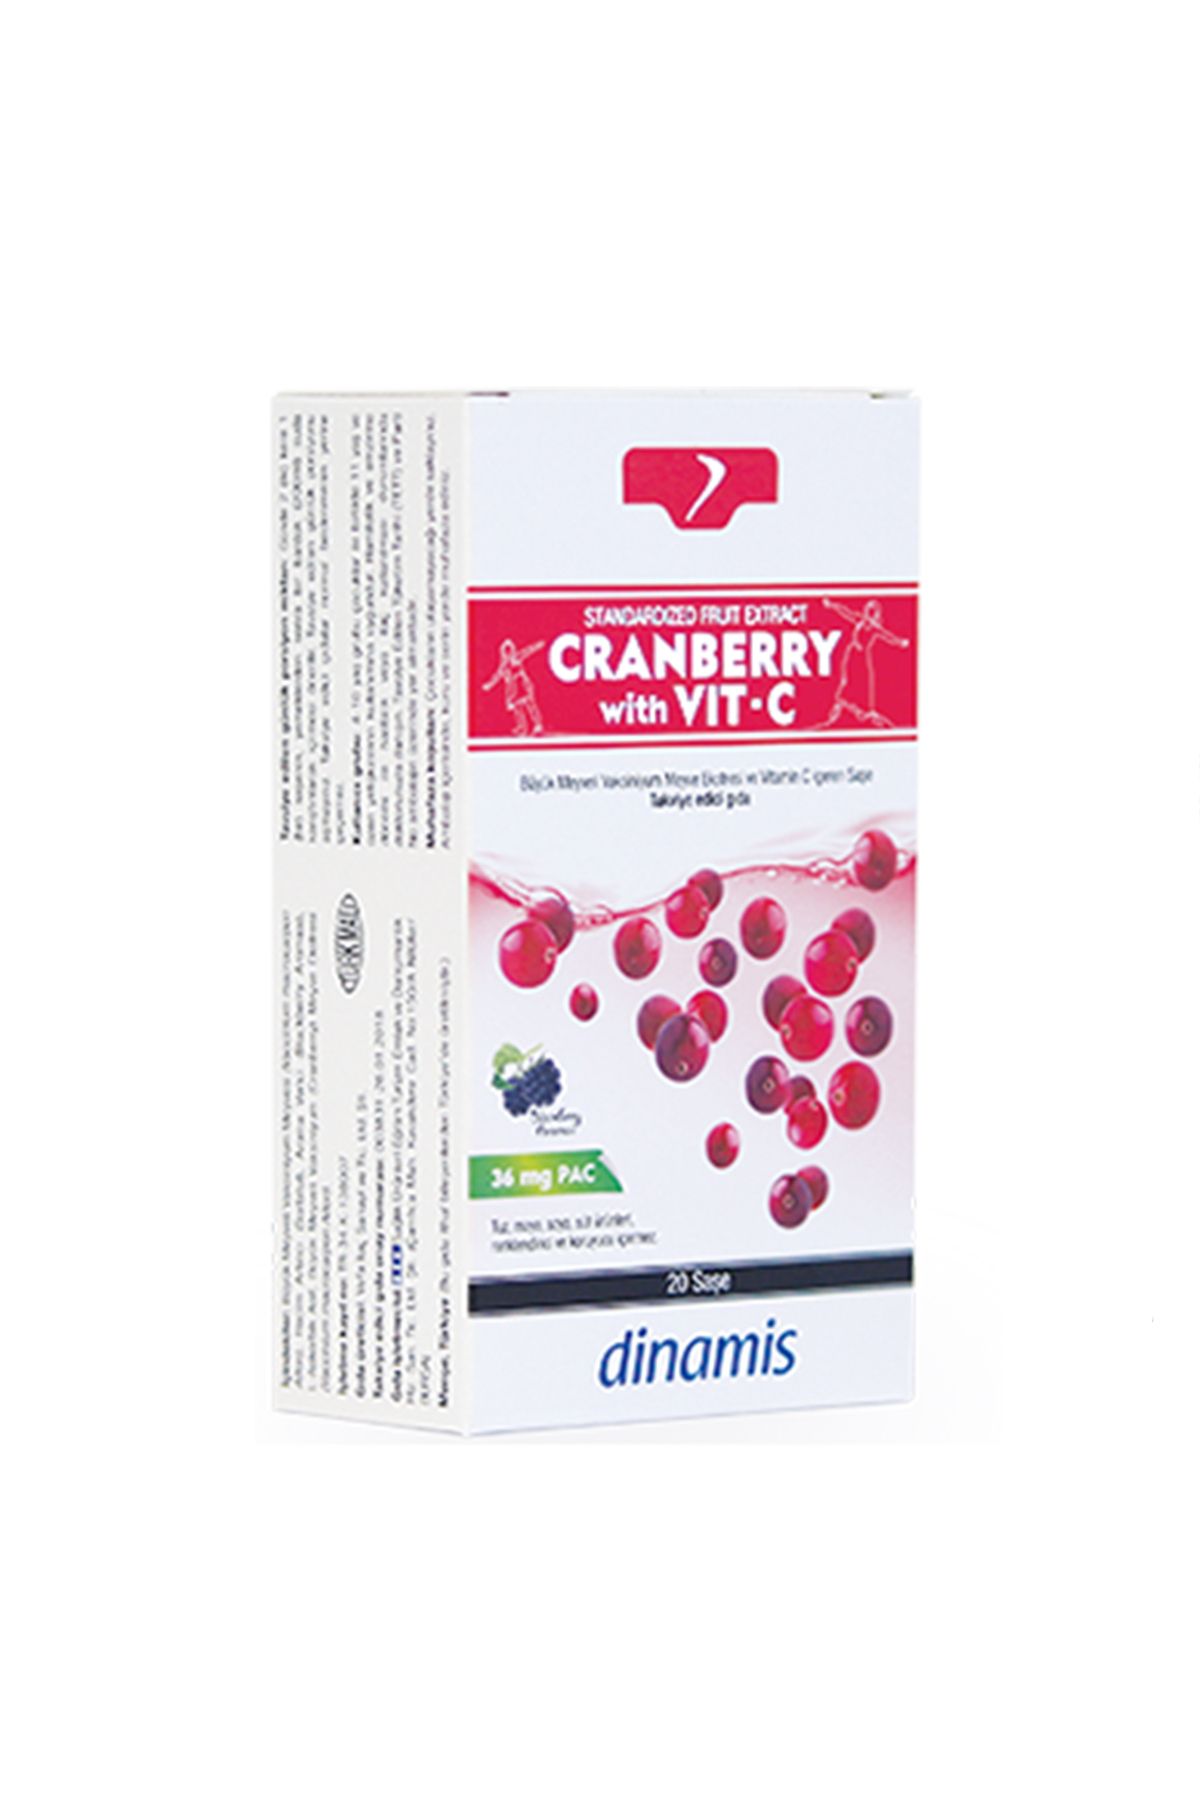 DİNAMİS Dinamis Cranberry With Vit-c Takviye Edici Gıda 20 Saşe